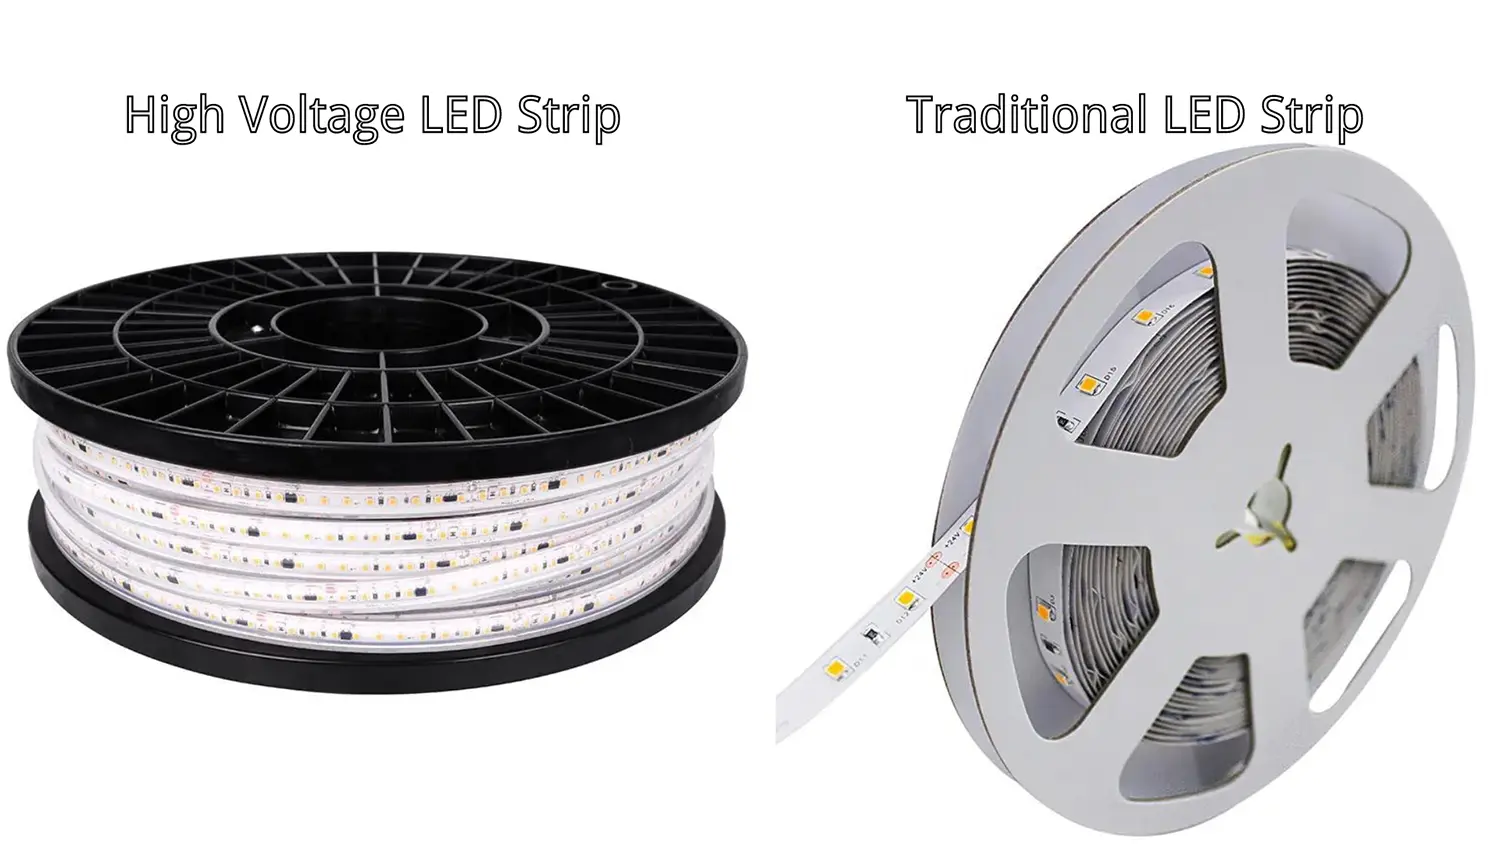 Bande LED haute tension et bande LED traditionnelle